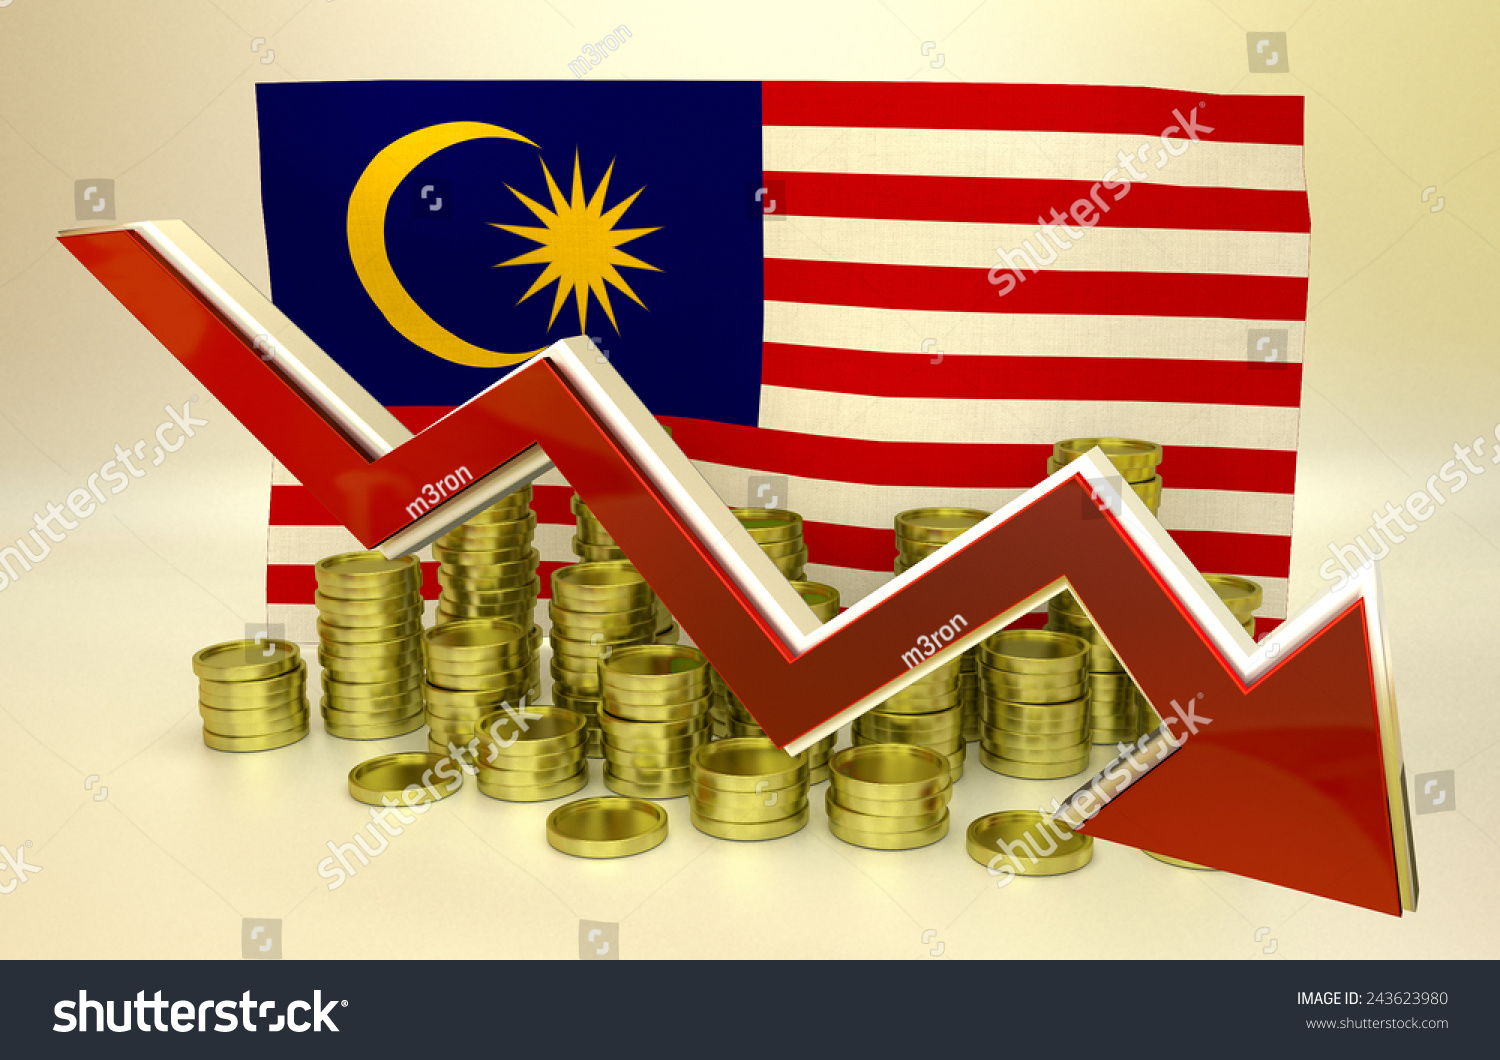 Ввп малайзии. Экономика Малайзии. Экономический рост Малайзии. Малайзия экономика страны. Уровень экономического развития Малайзии.